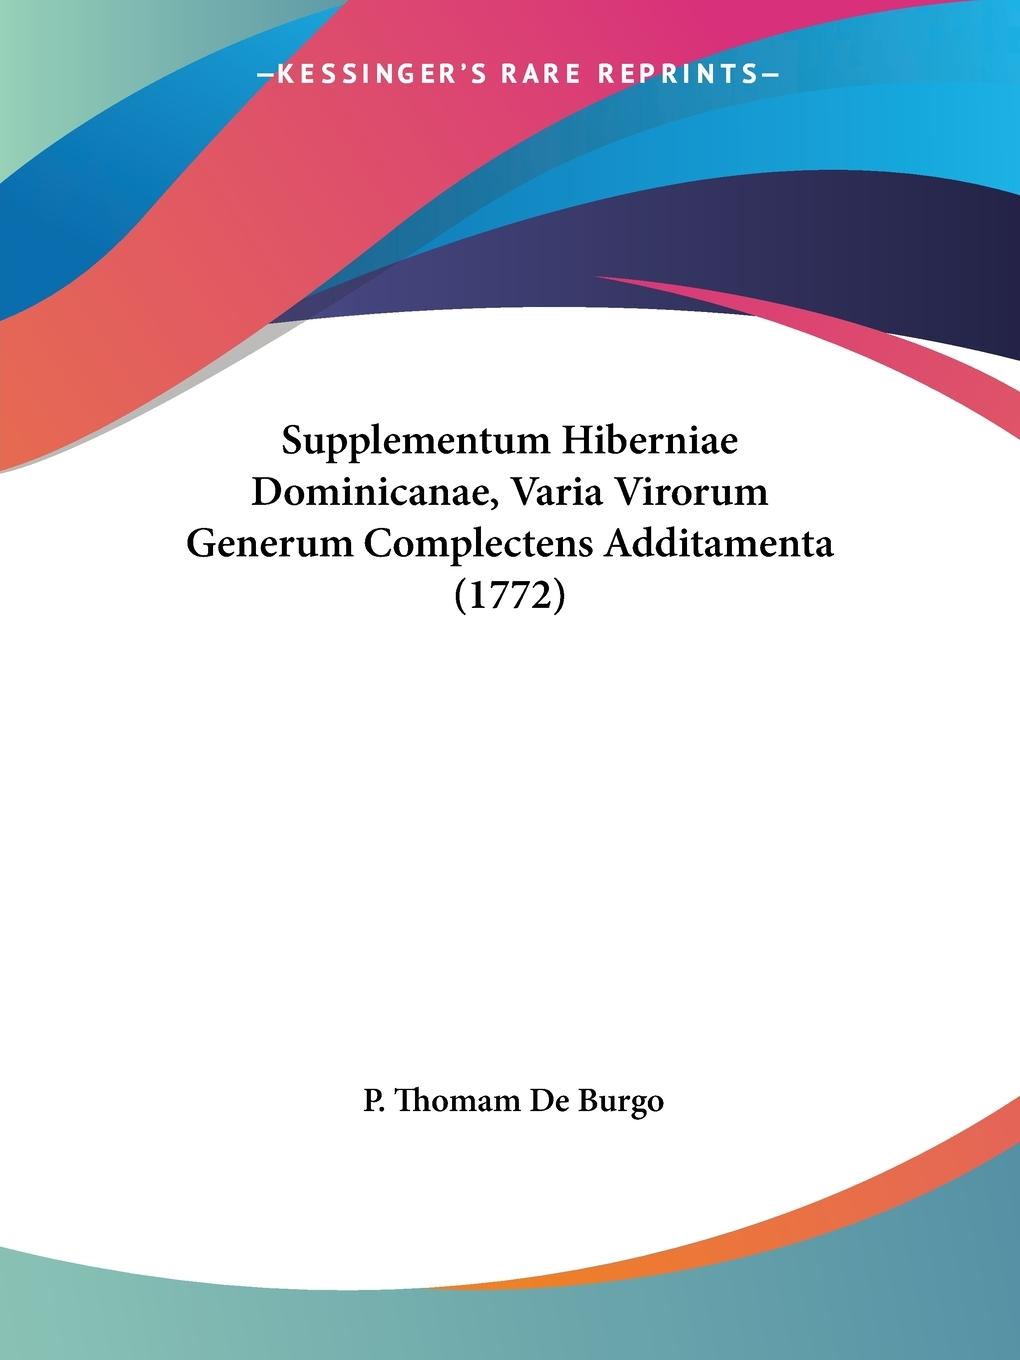 Supplementum Hiberniae Dominicanae, Varia Virorum Generum Complectens Additamenta (1772) - De Burgo, P. Thomam